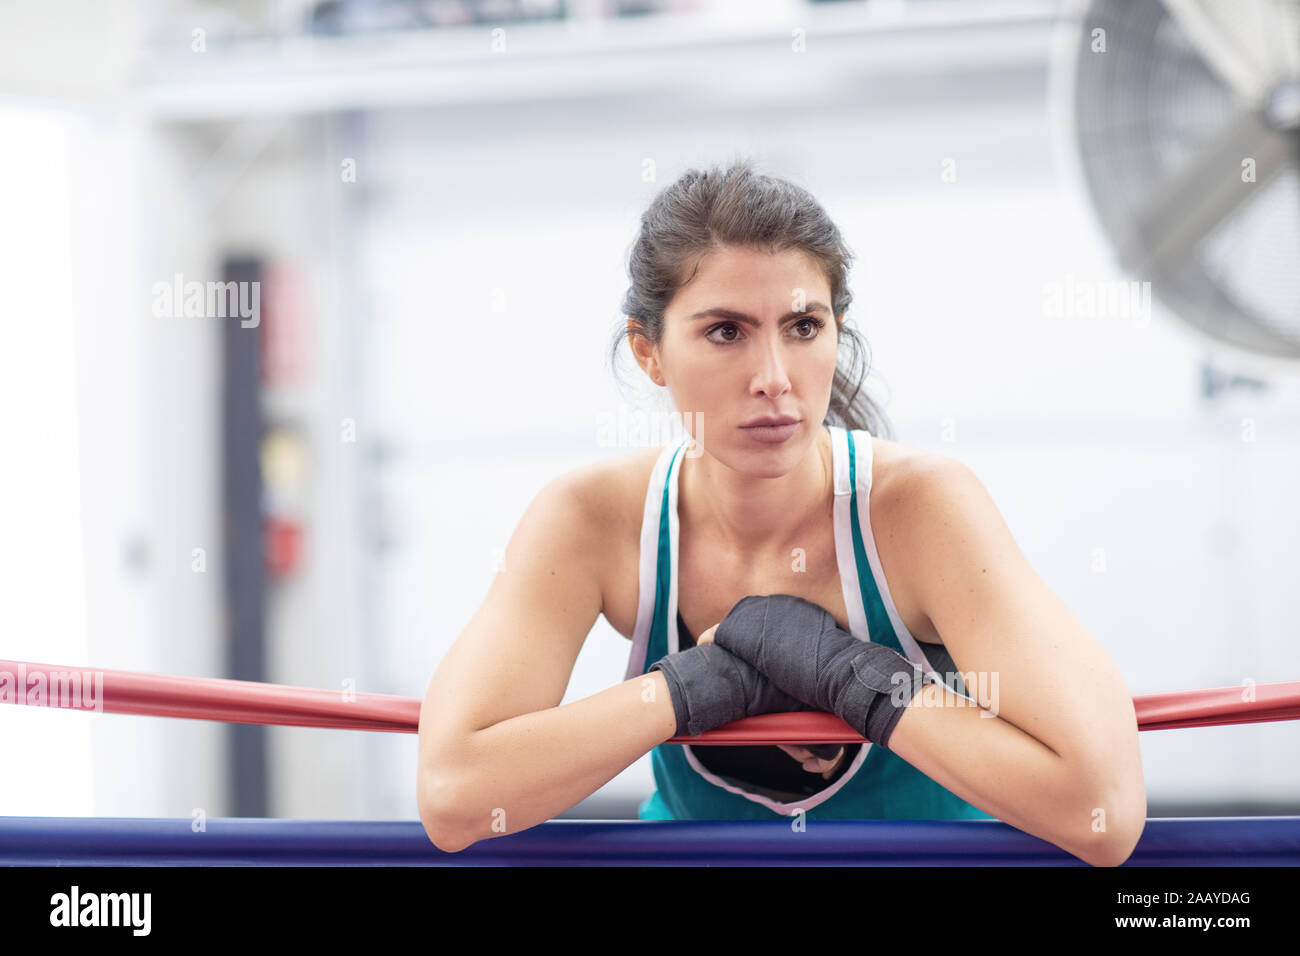 Ein badass female Boxer ruht auf Ring Seile mit ihr in einem Boxing Gym, weiße Wände, rote und schwarze Matten, drinnen Wraps. Stockfoto